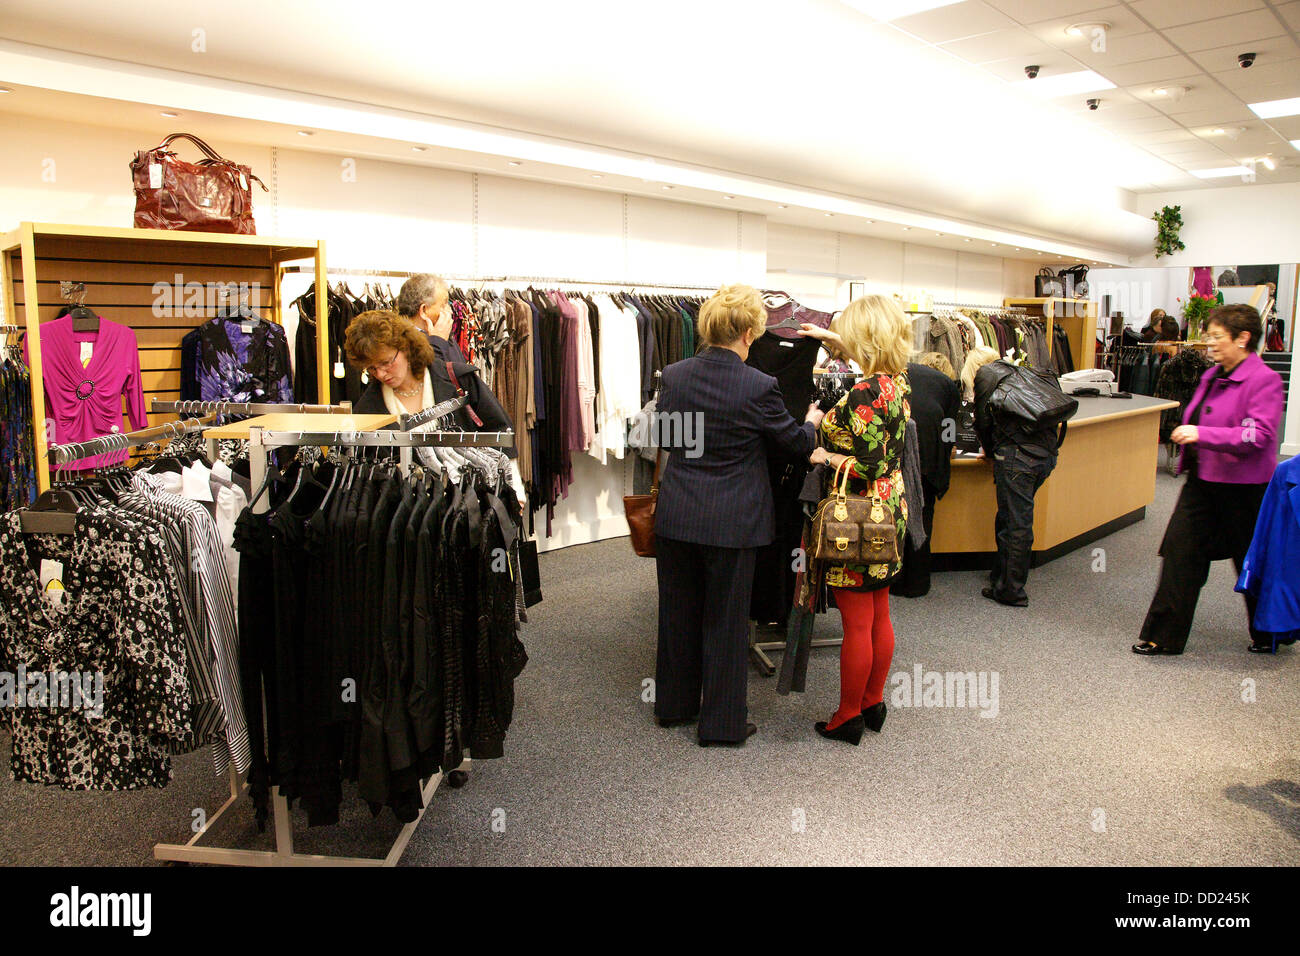 Frauen shopping für Kleider in Bekleidungsgeschäft Stockfoto